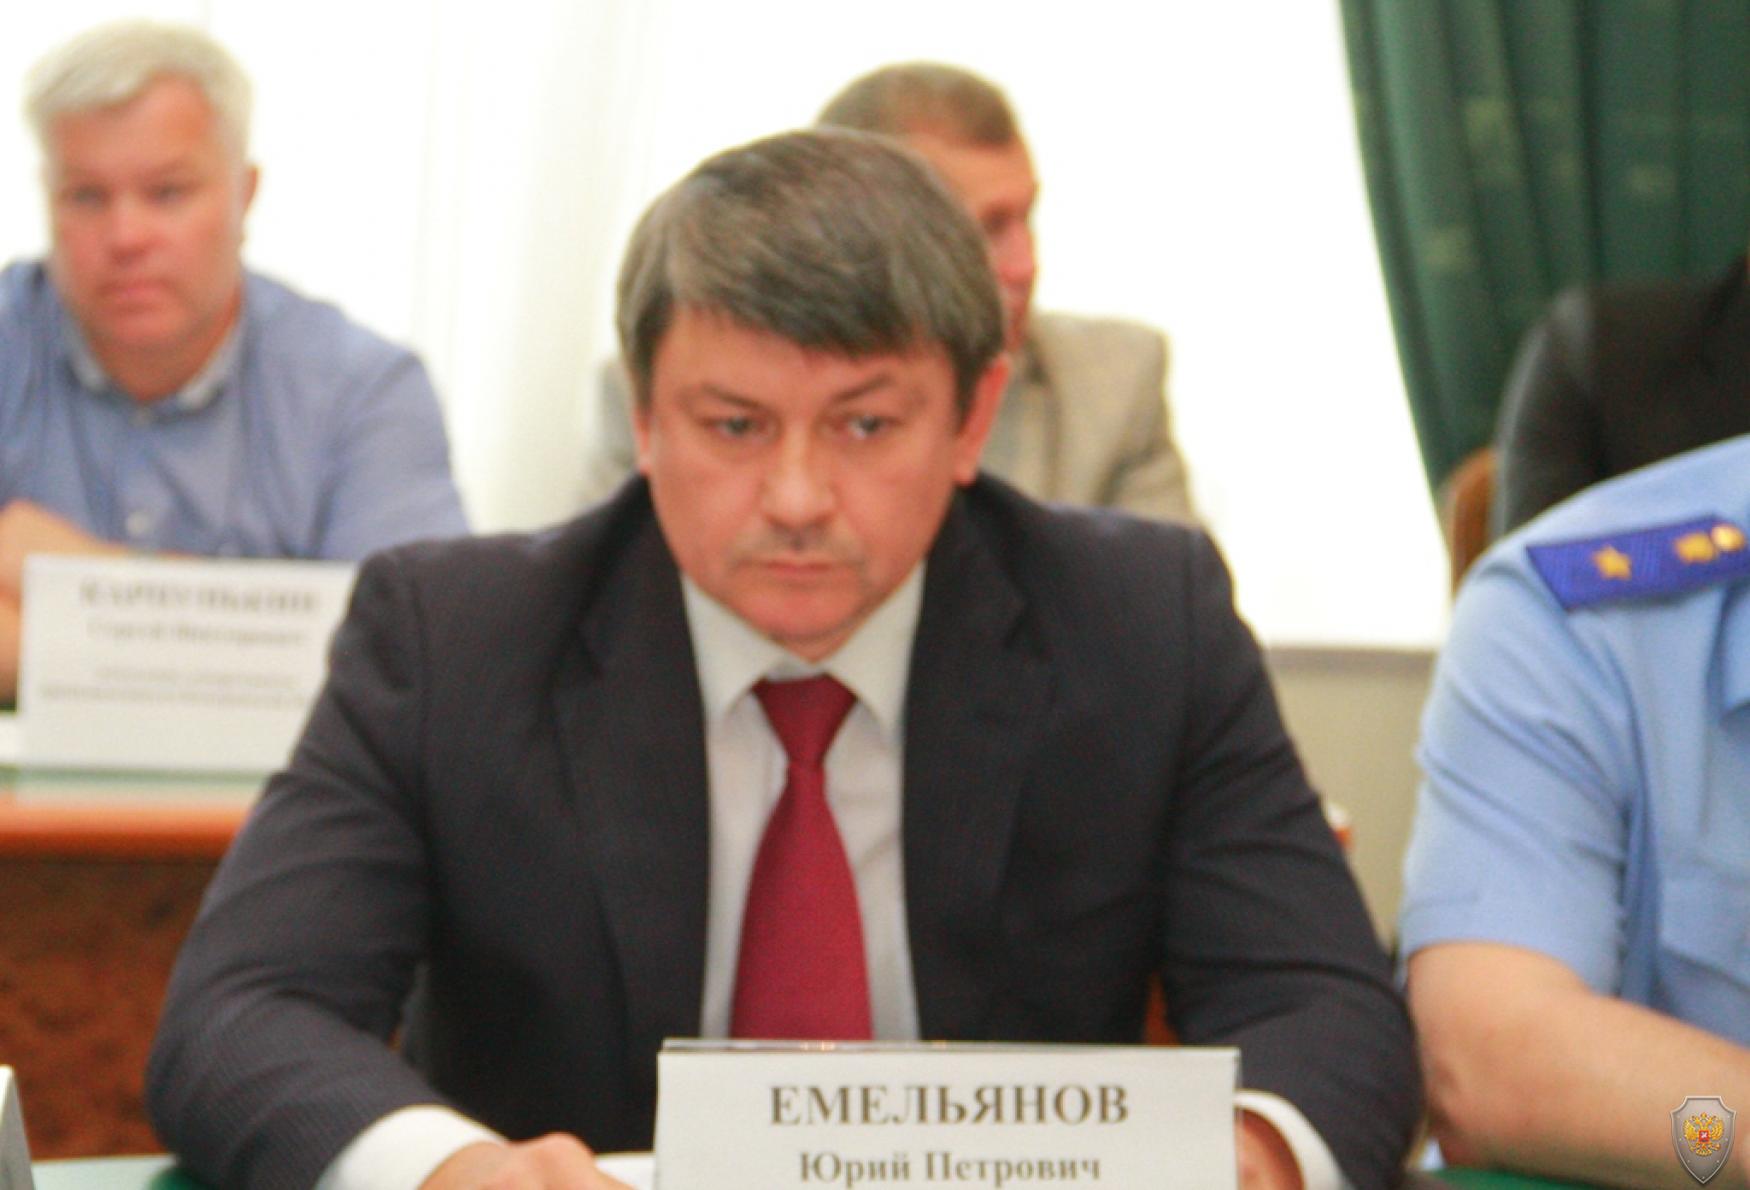 Председатель Избирательной комиссии Кемеровской области Емельянов Юрий Петрович